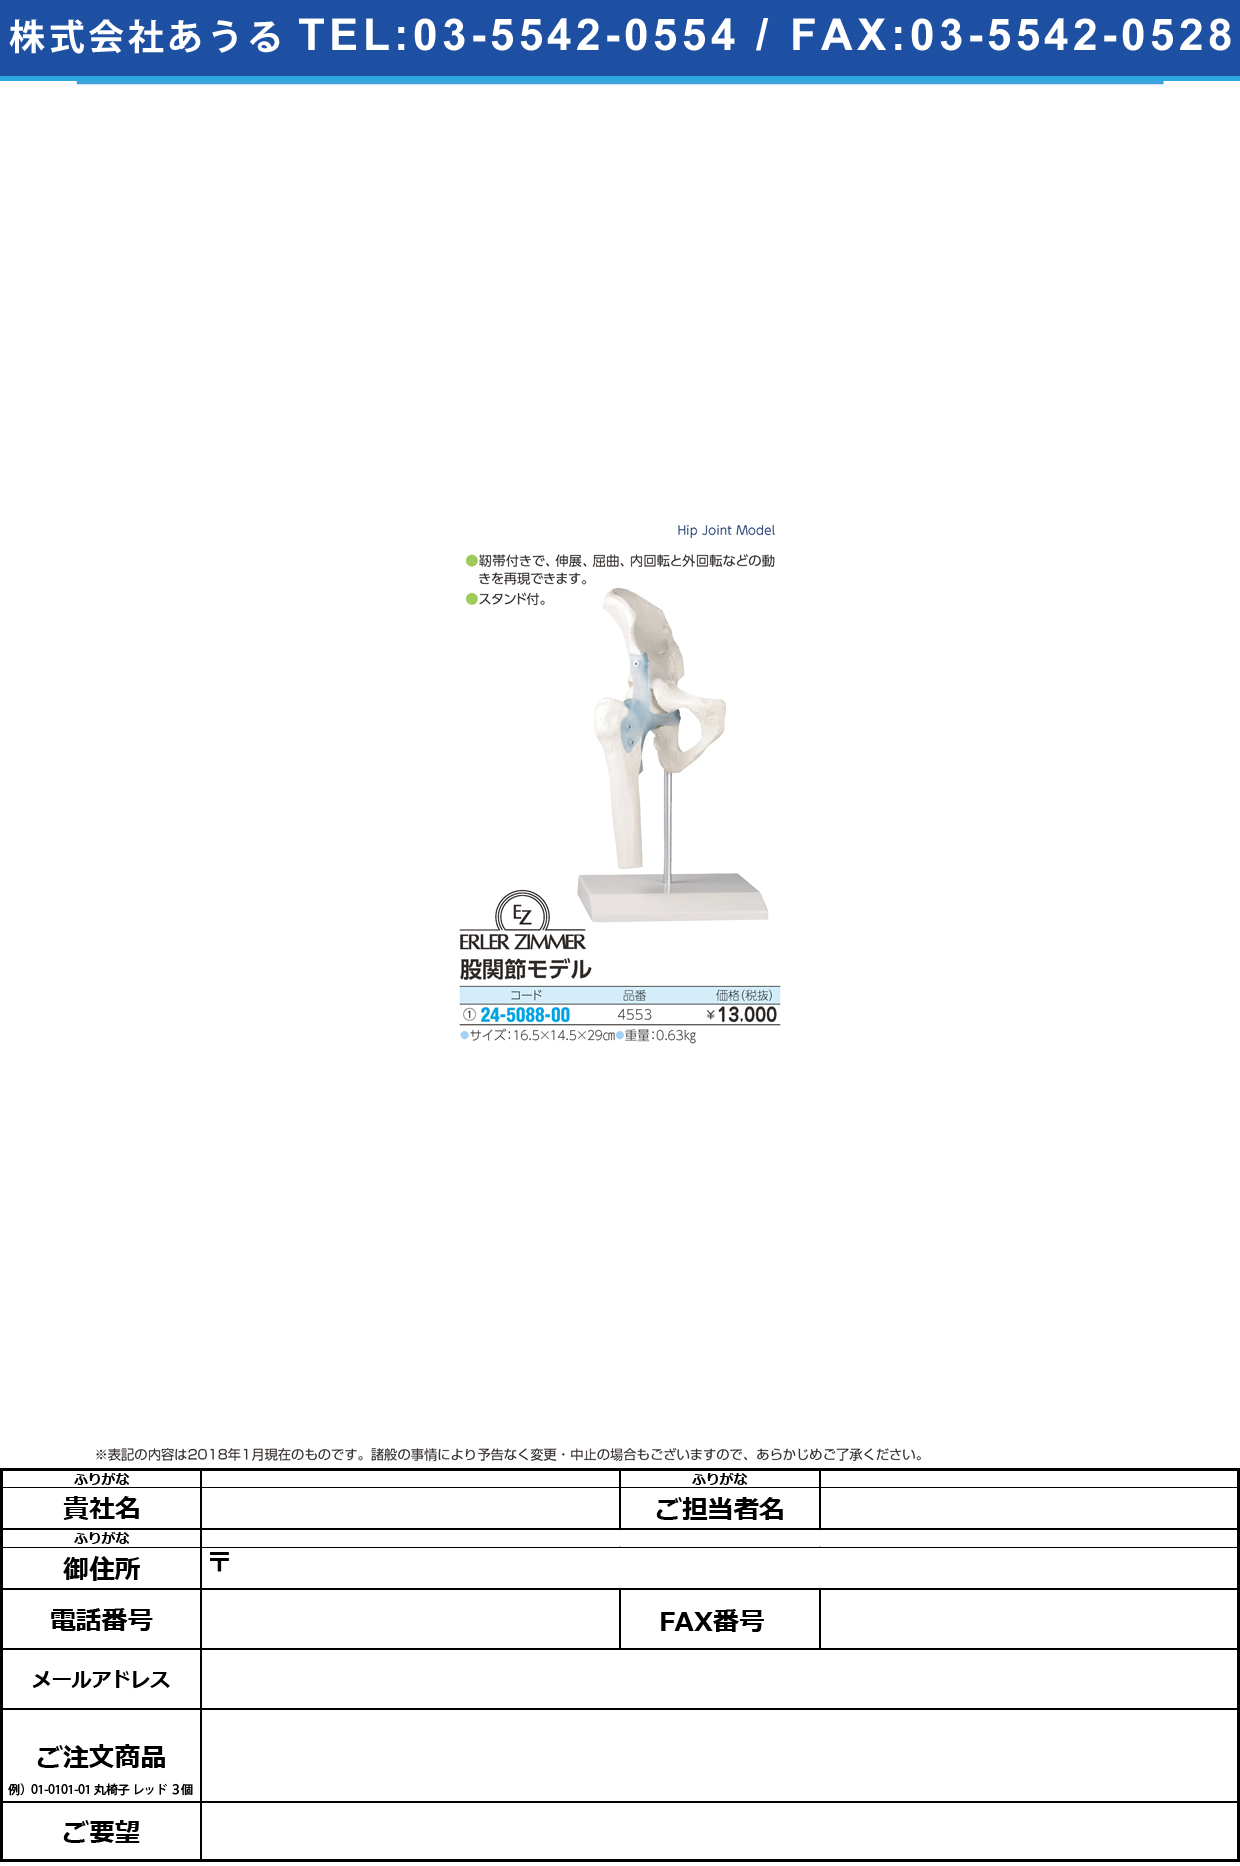 (24-5088-00)股間接モデル 4553 ﾏﾀｶﾝｾﾂﾓﾃﾞﾙ(エルラージーマー社)【1個単位】【2019年カタログ商品】